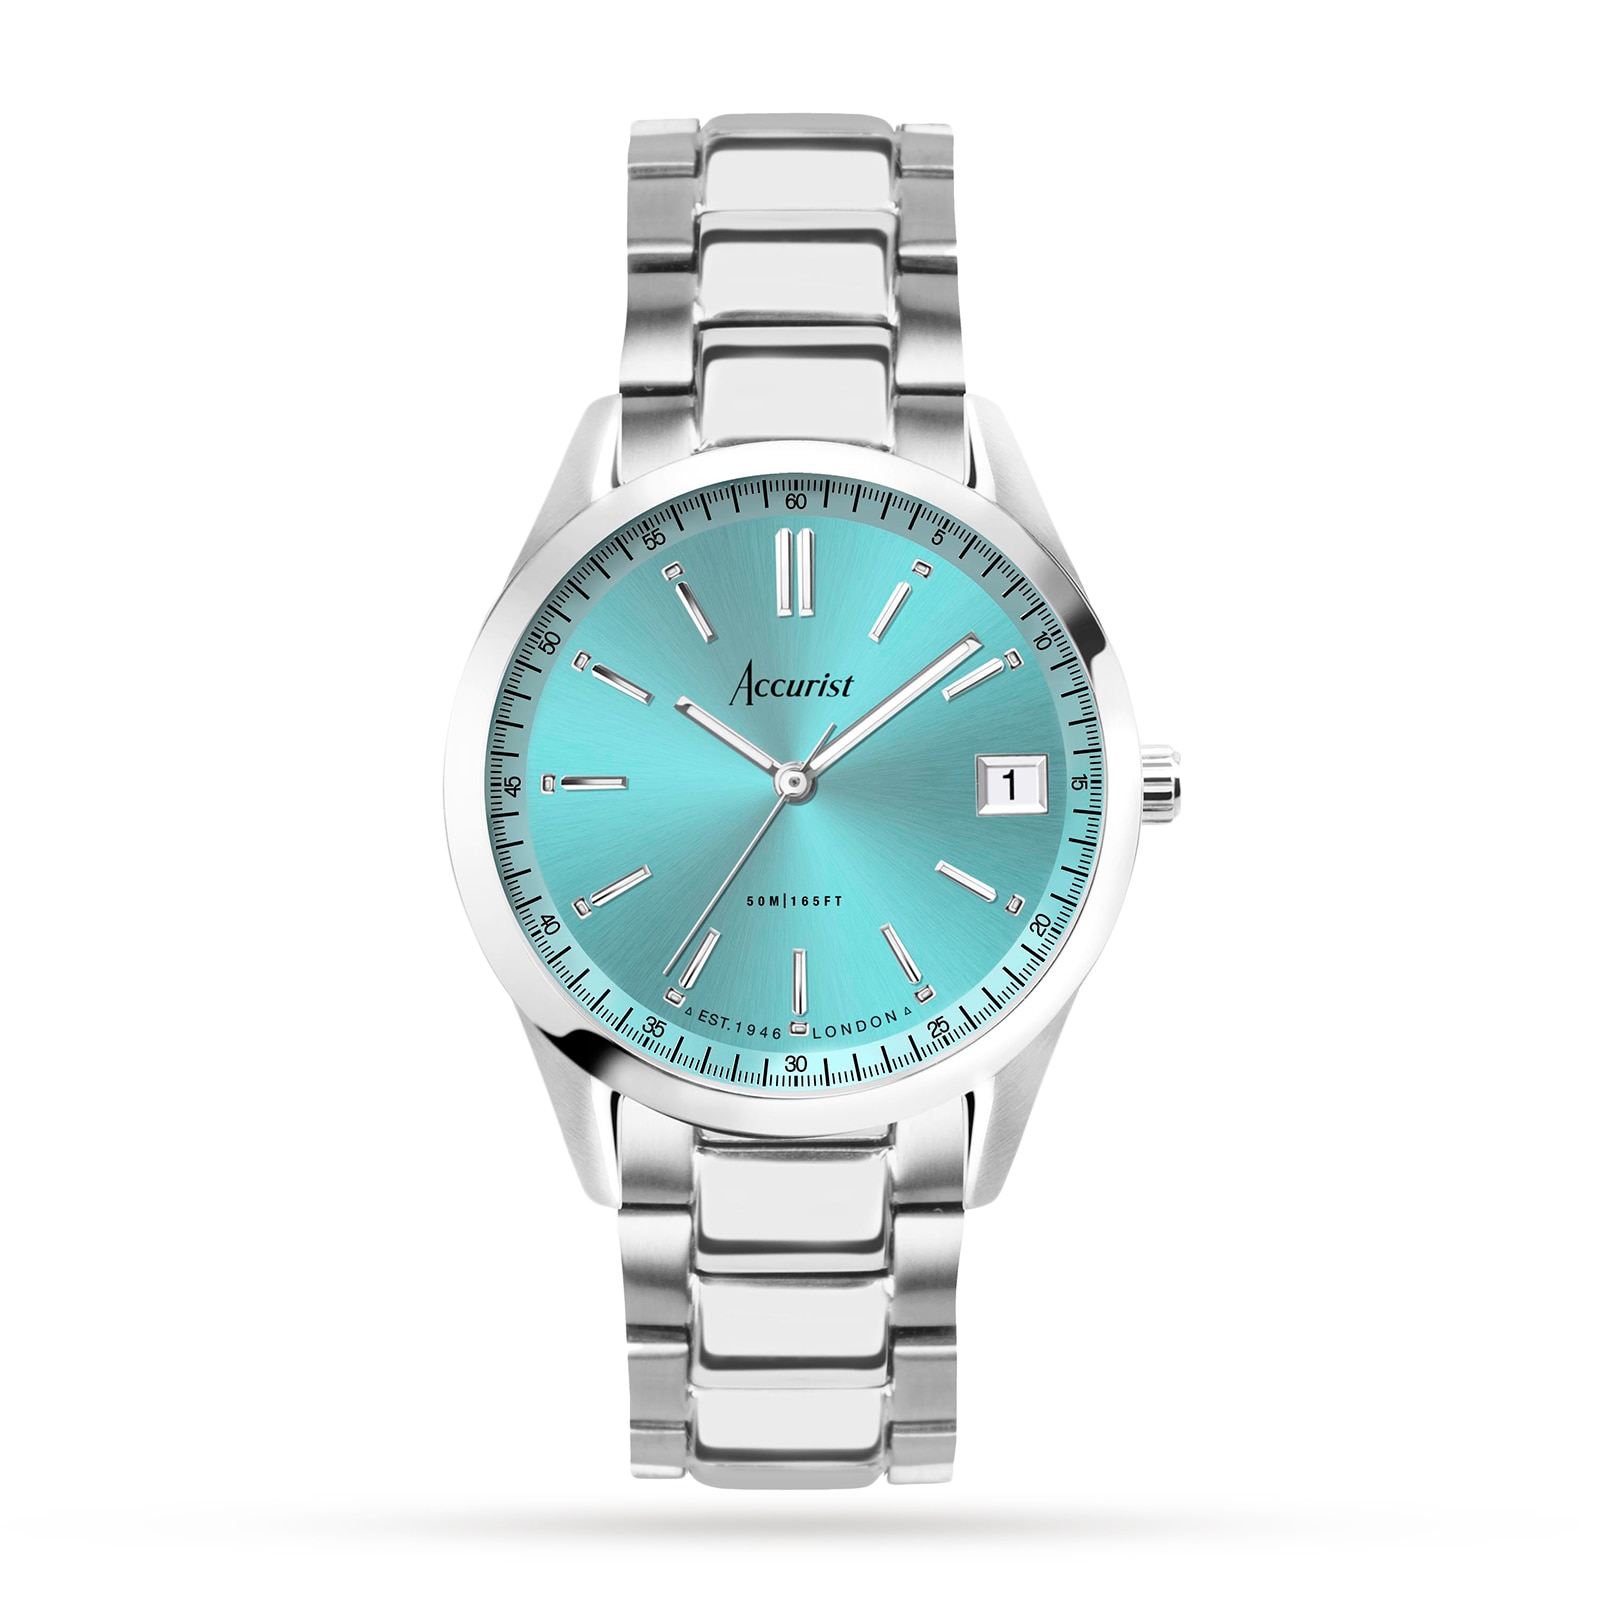 Accurist Watches - British style watches since 1946 | British watch brands,  Watches for men, Designer watch brands